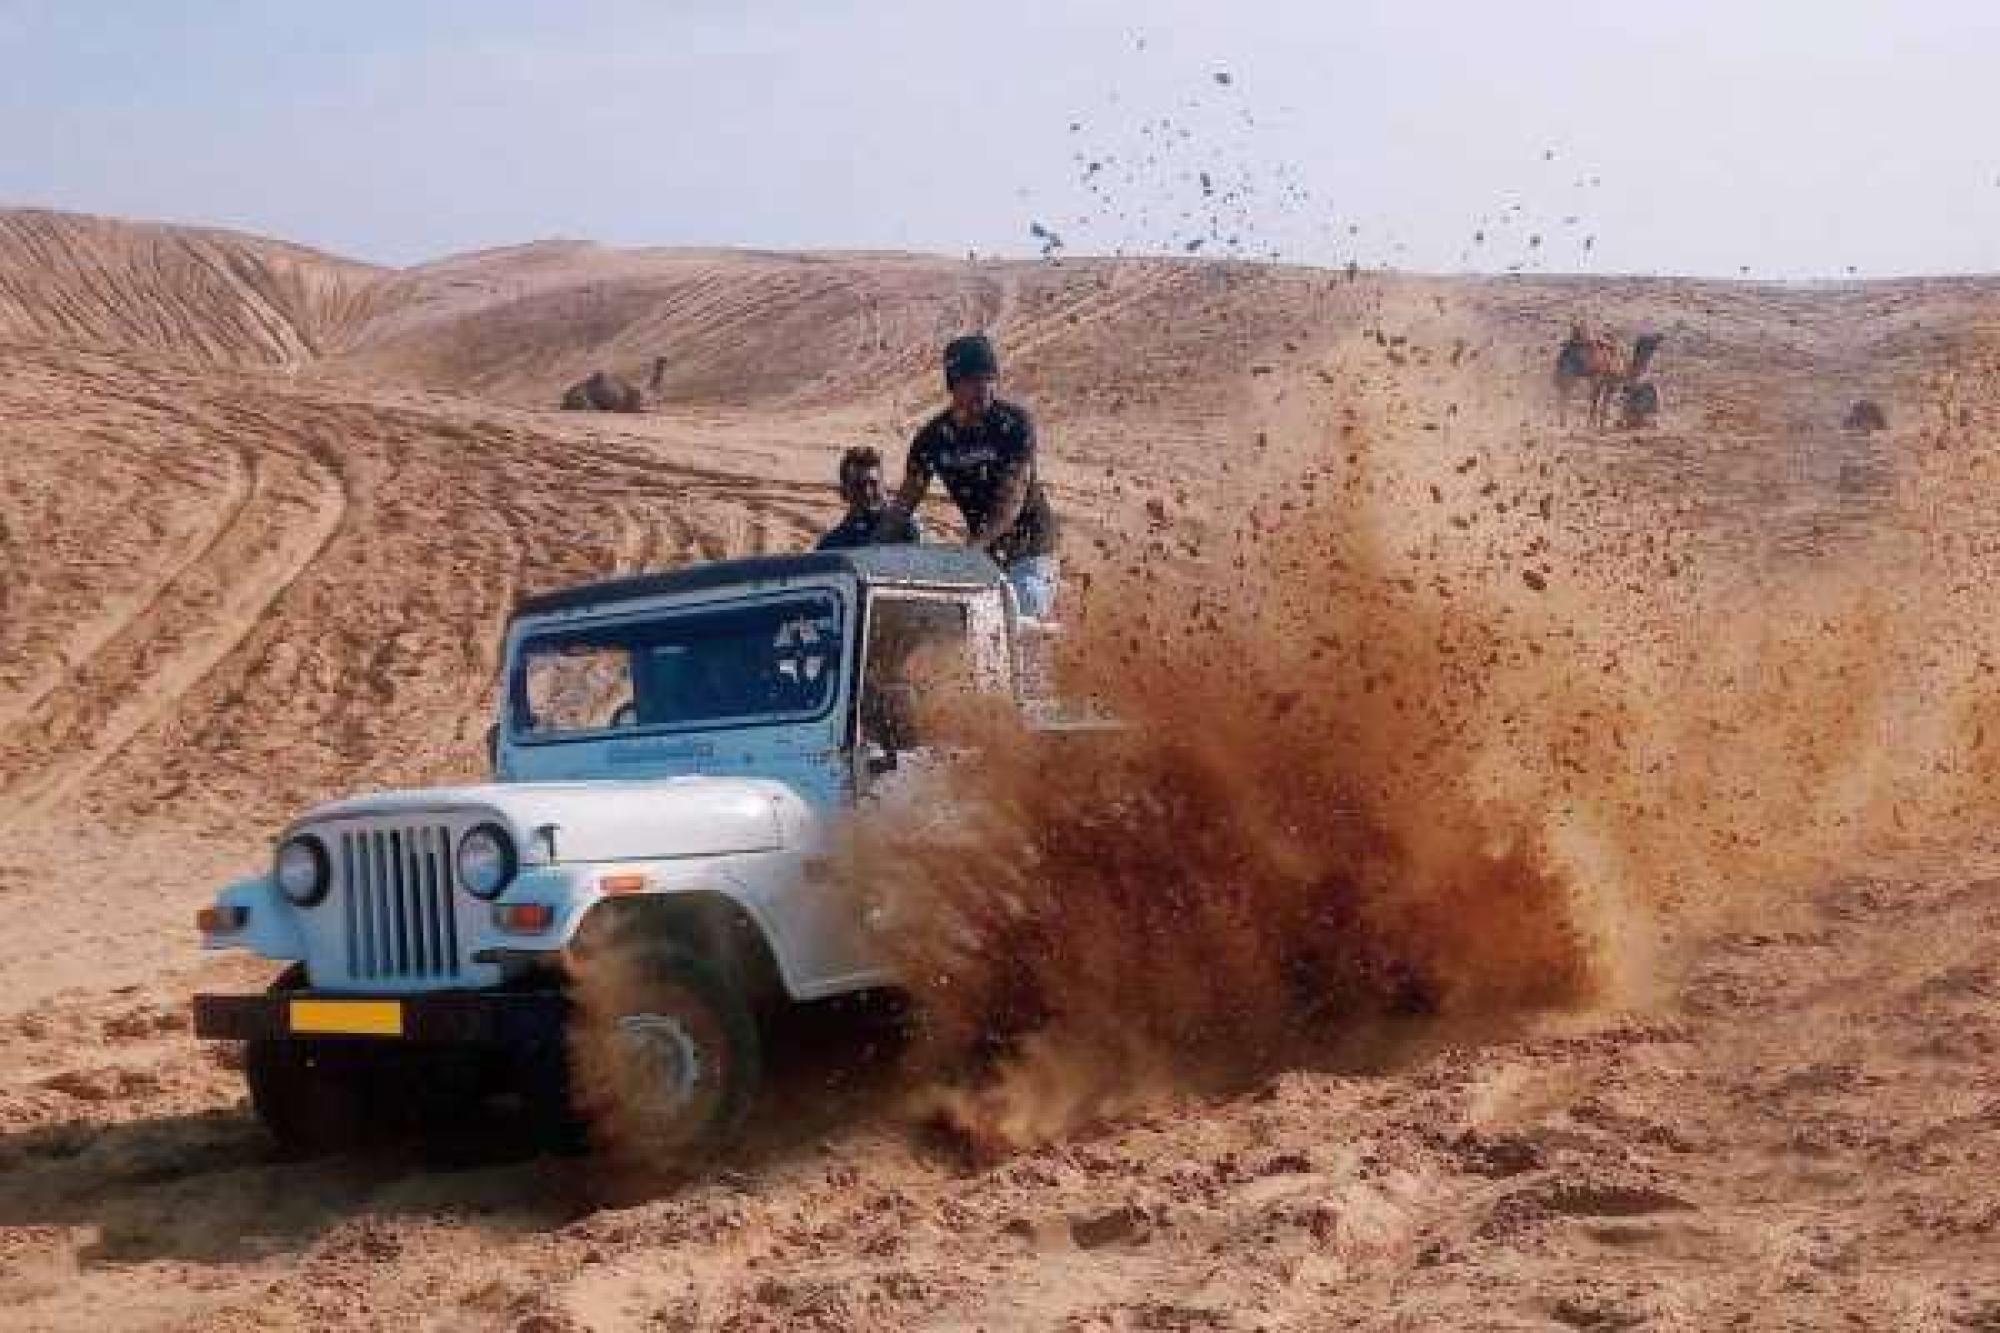 Jeep Safari in Dunes of Rajasthan